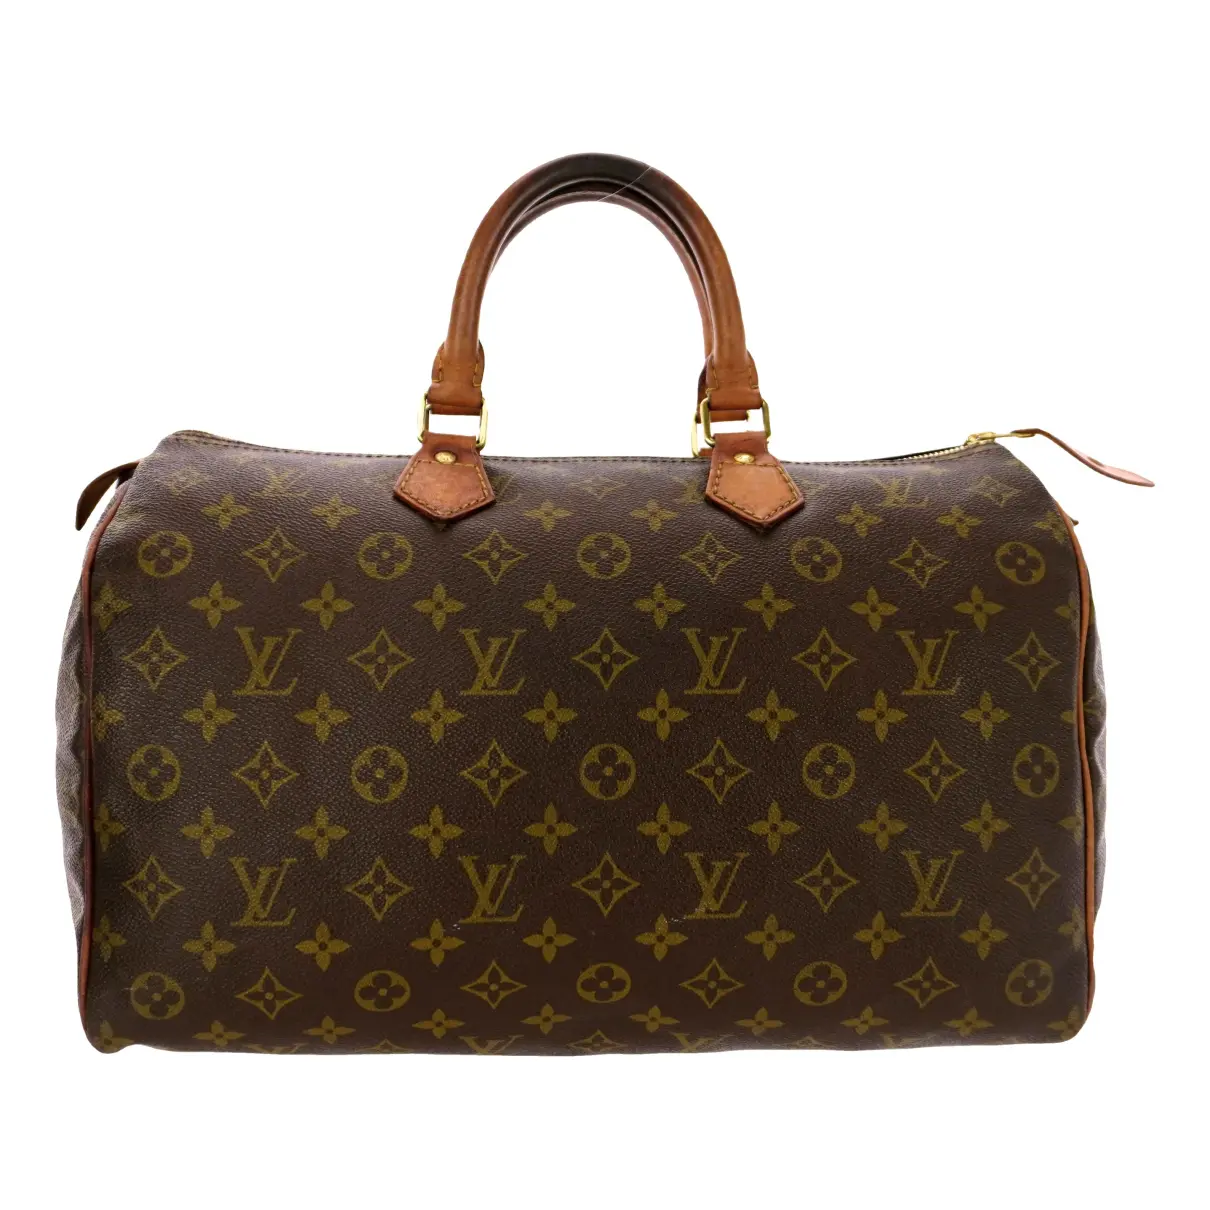 Speedy leather tote Louis Vuitton